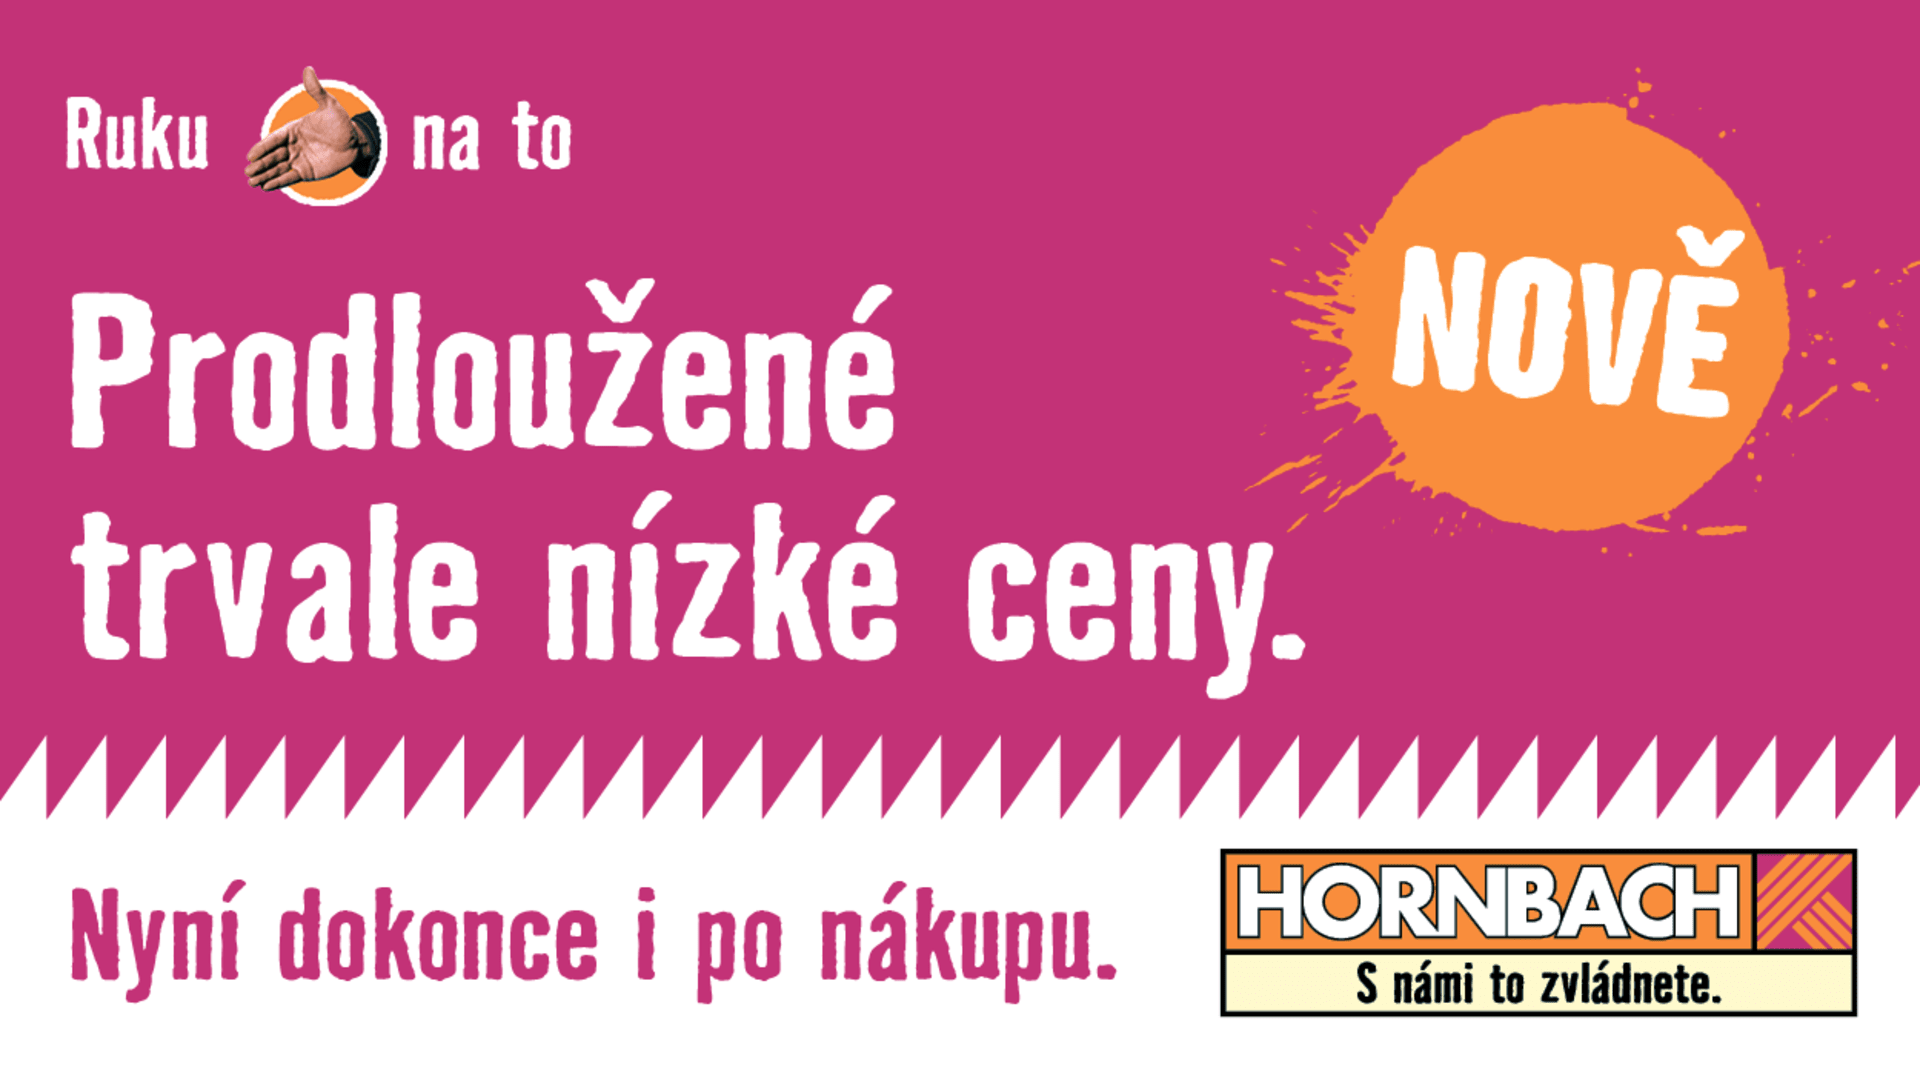 Hornbach - Prodloužené trvale nízké ceny.